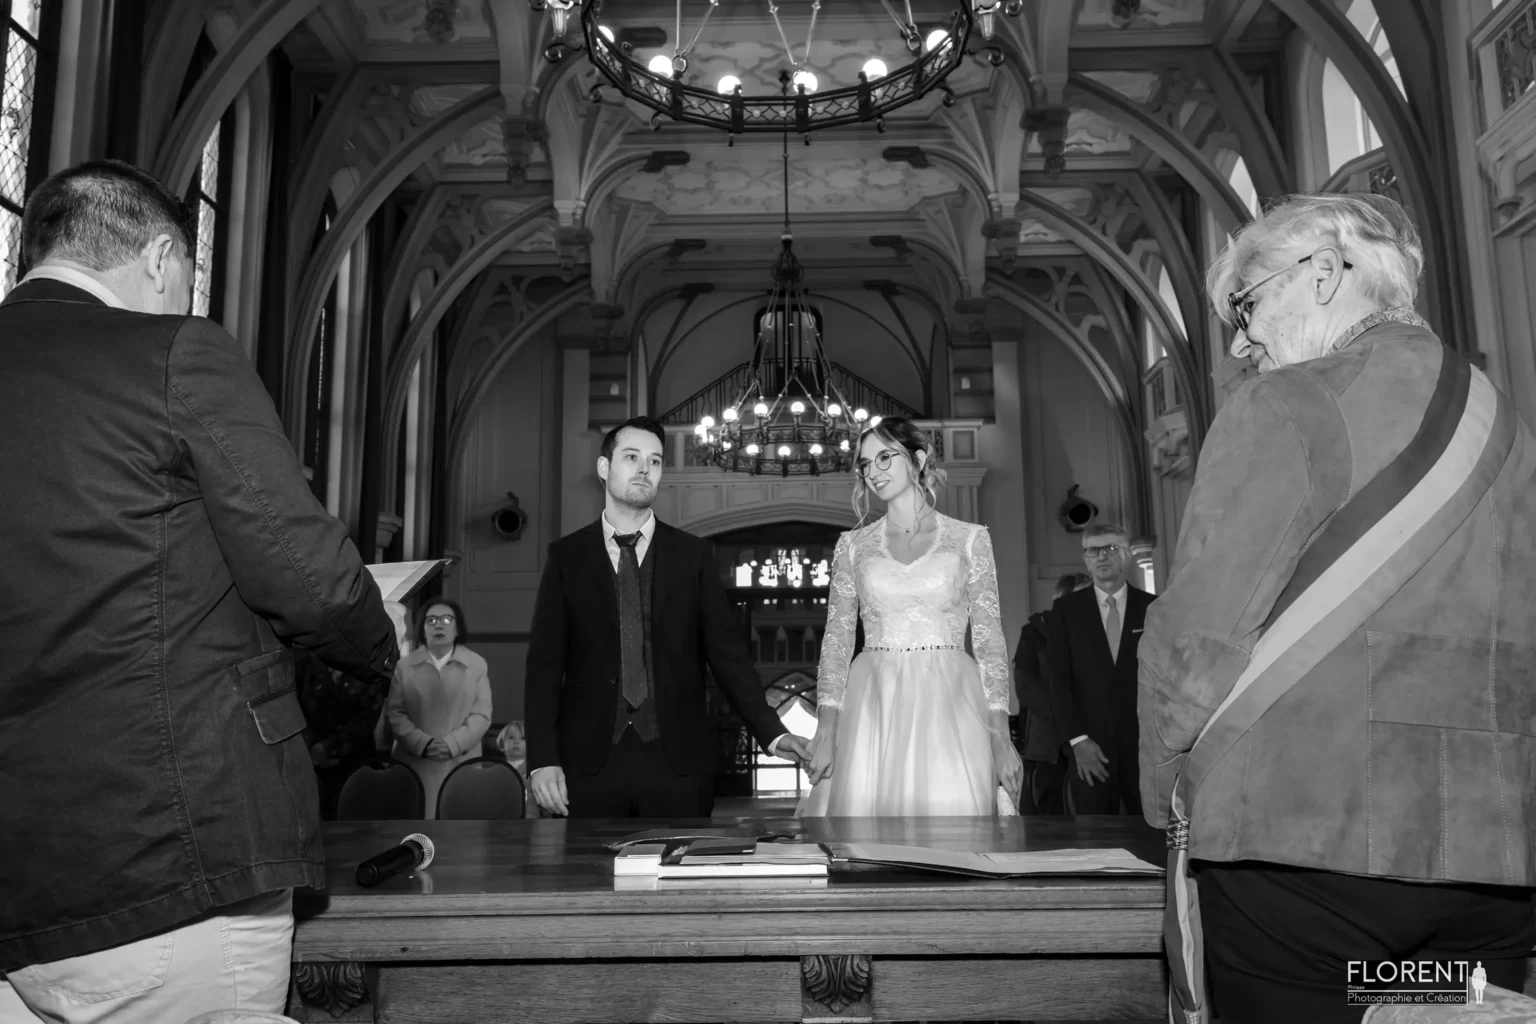 photographe mariage les maries debout devant la maire lecture en noir et blanc florent studio boulogne sur mer lille saint omer paris